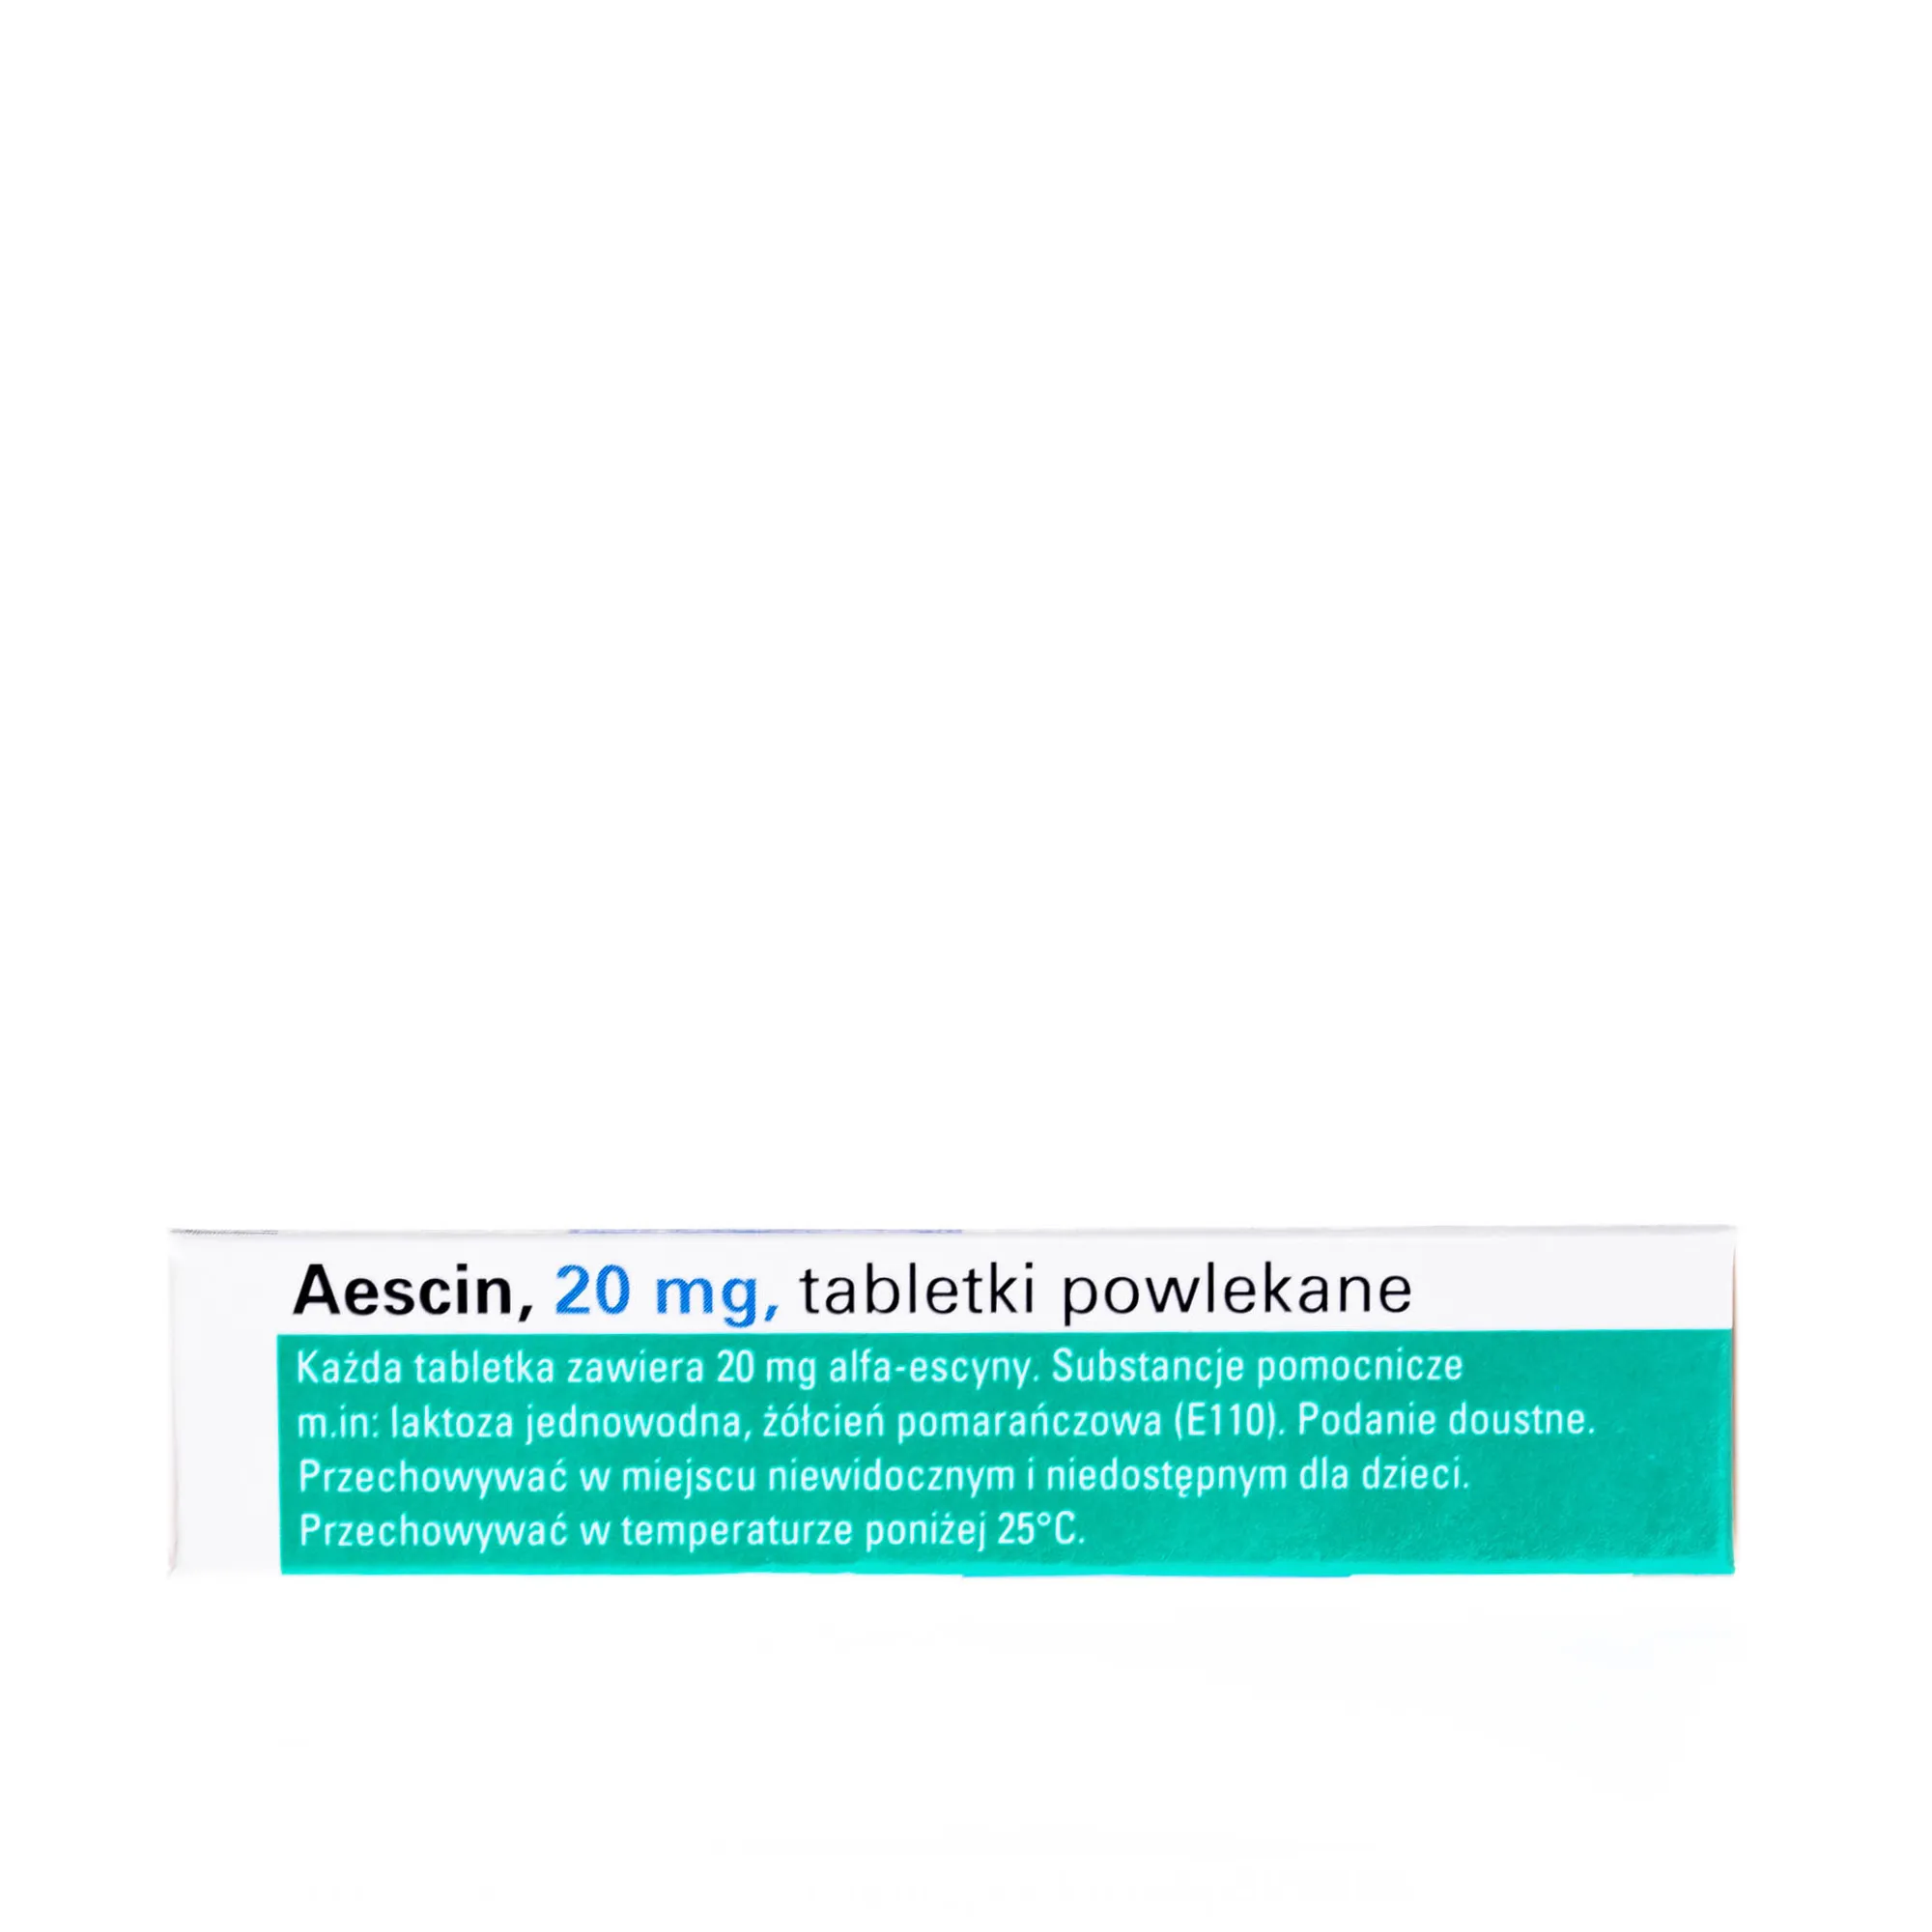 Aescin 20 mg - tabletki powlekane na różne dolegliwości żylne, 30 tabletek powlekanych 